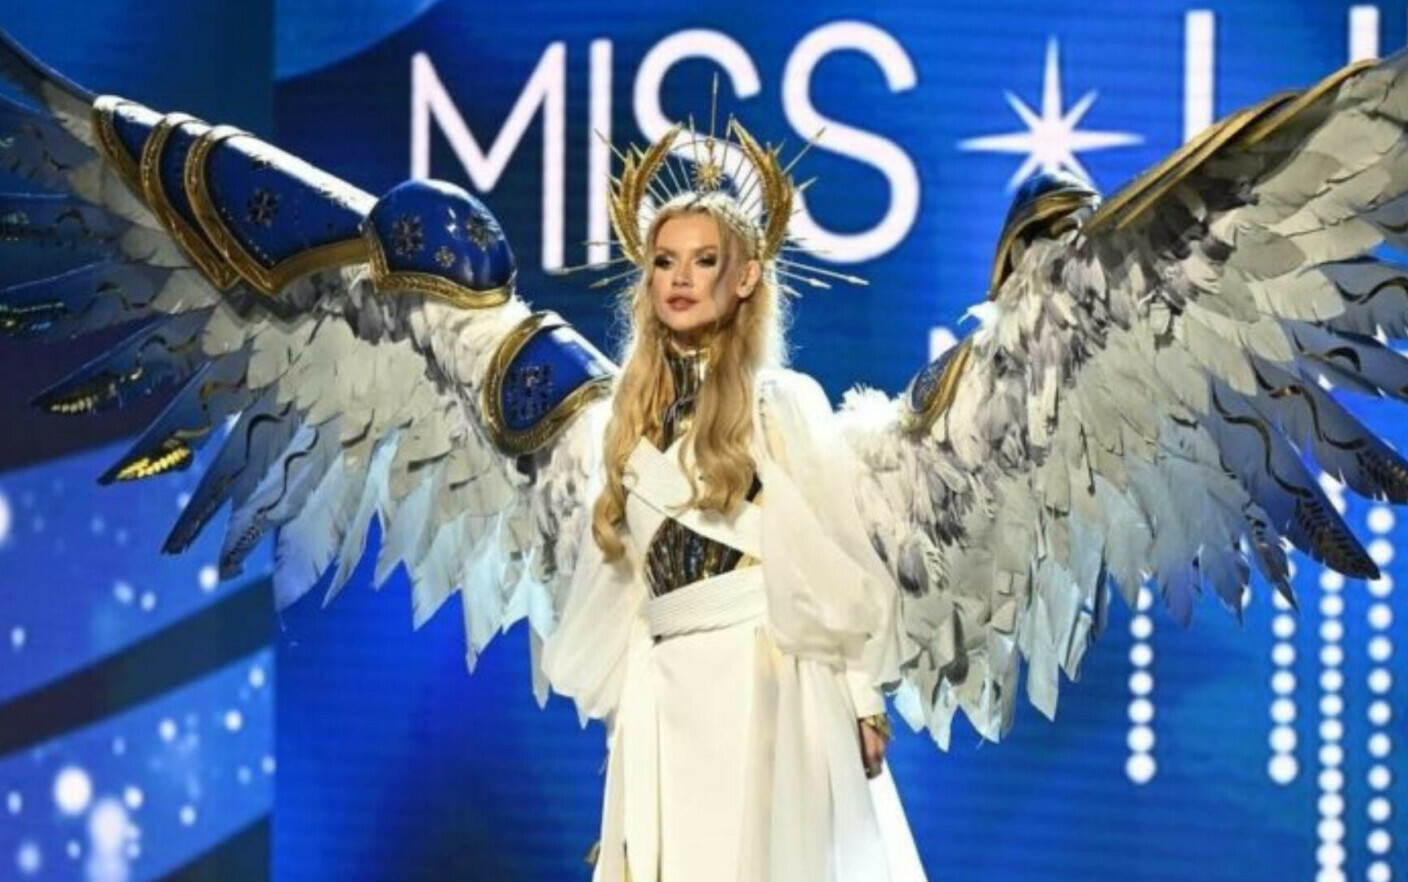 Apariție surprinzătoare a candidatei Ucrainei la Miss Univers